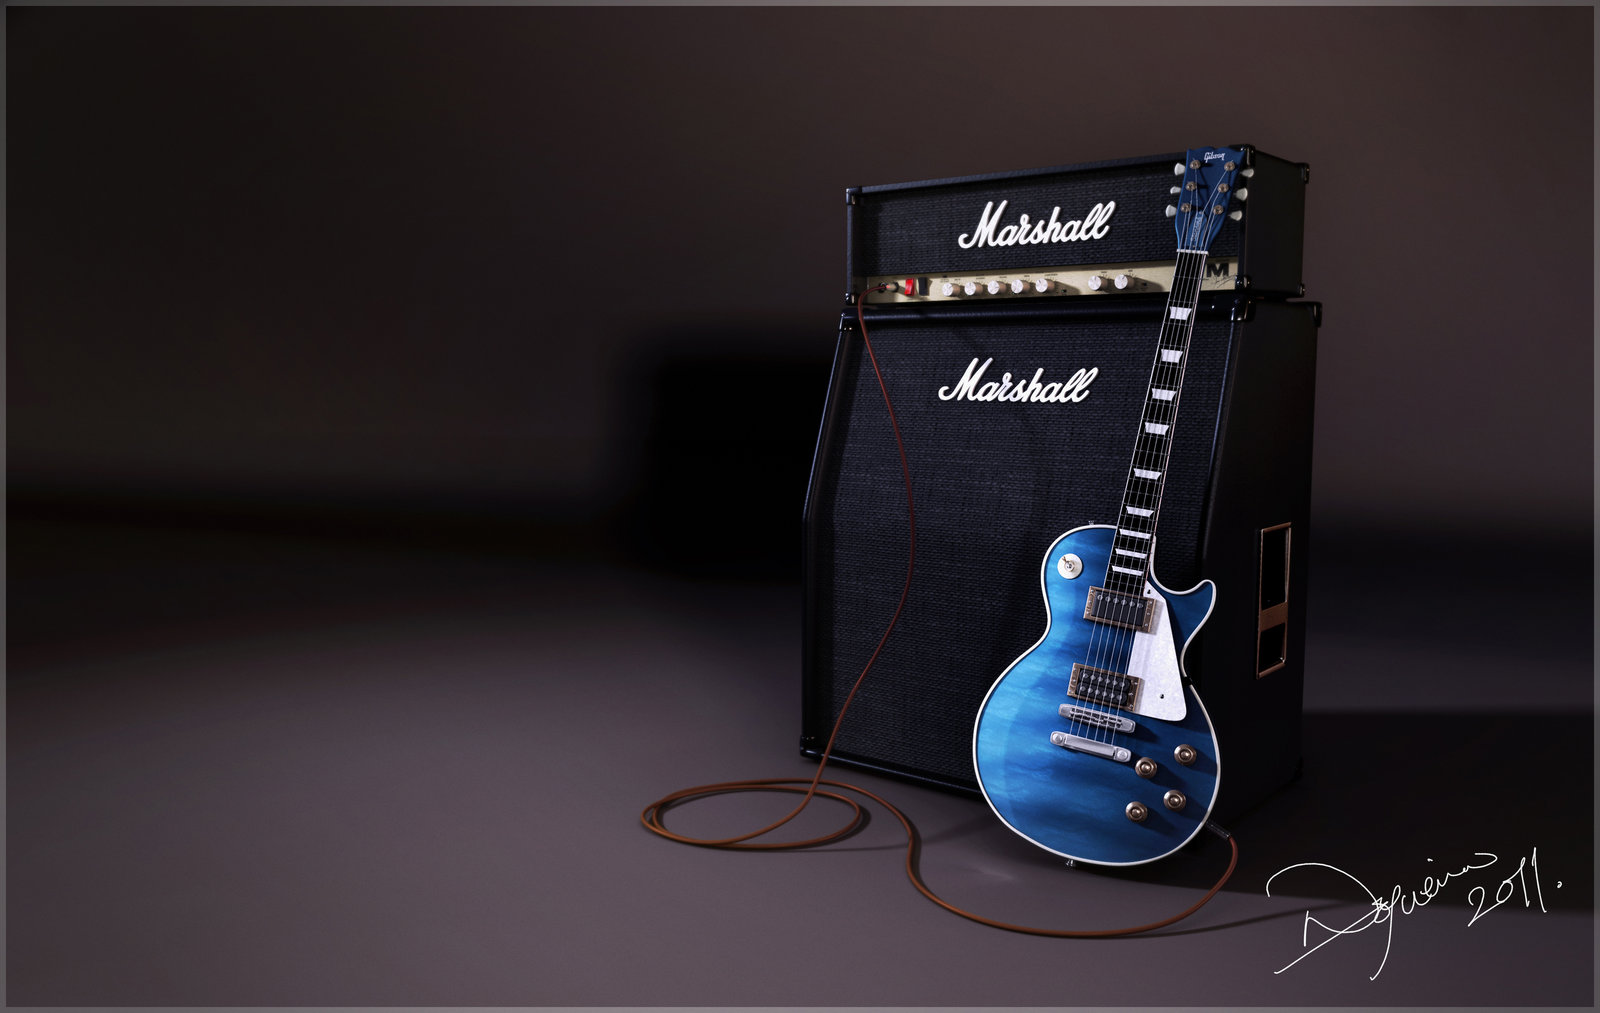 Gibson Guitar Desktop HD Wallpaper In Music Imageci